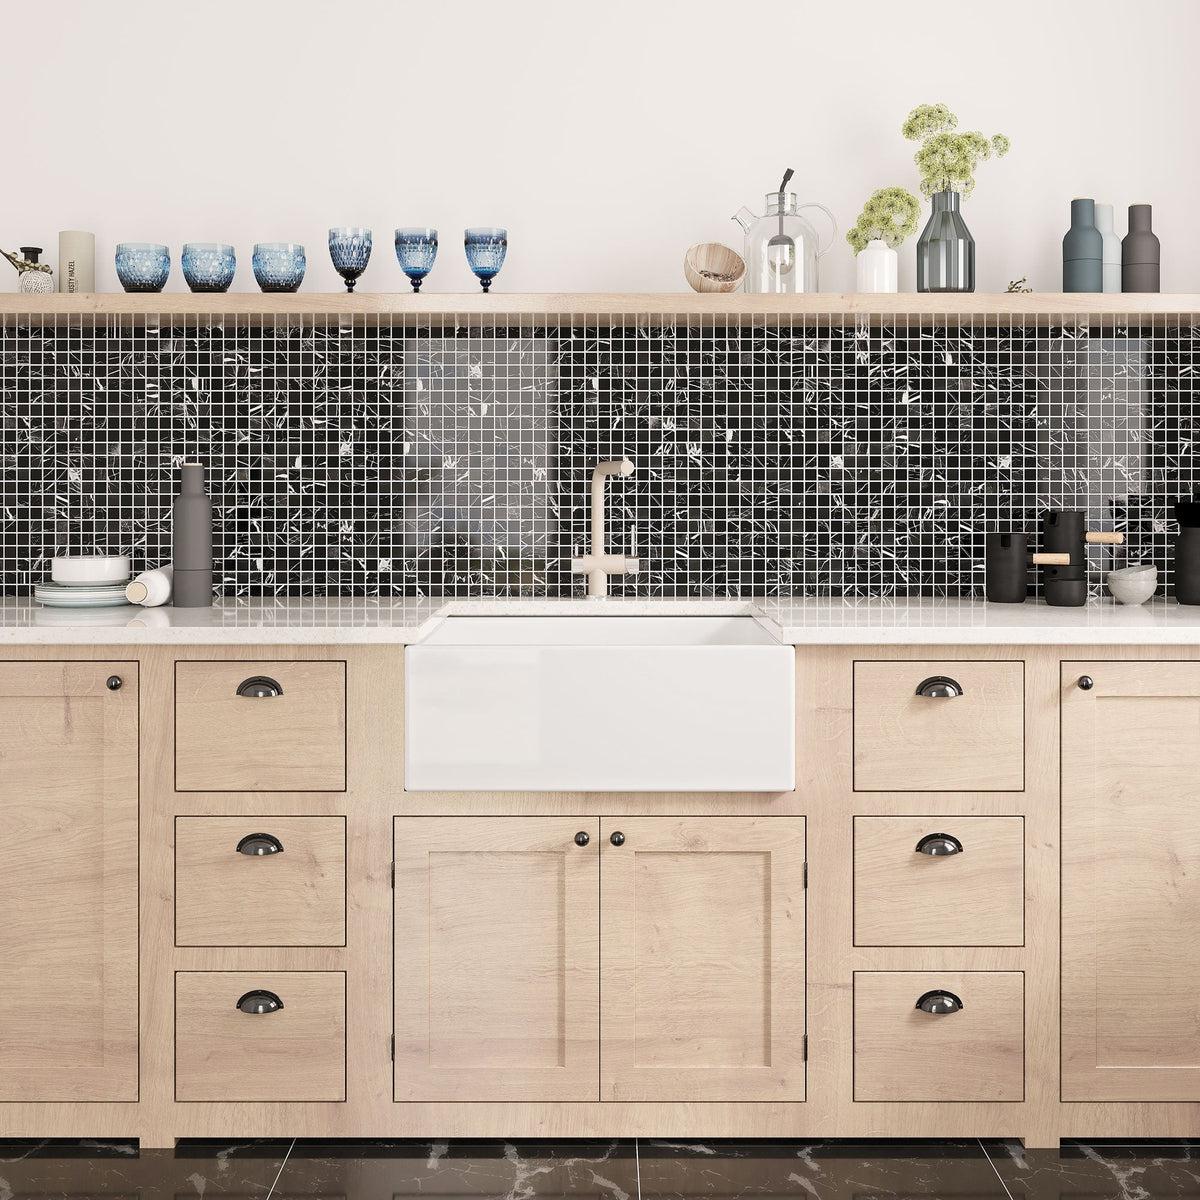 Rustic kitchen with black marble tile backsplash